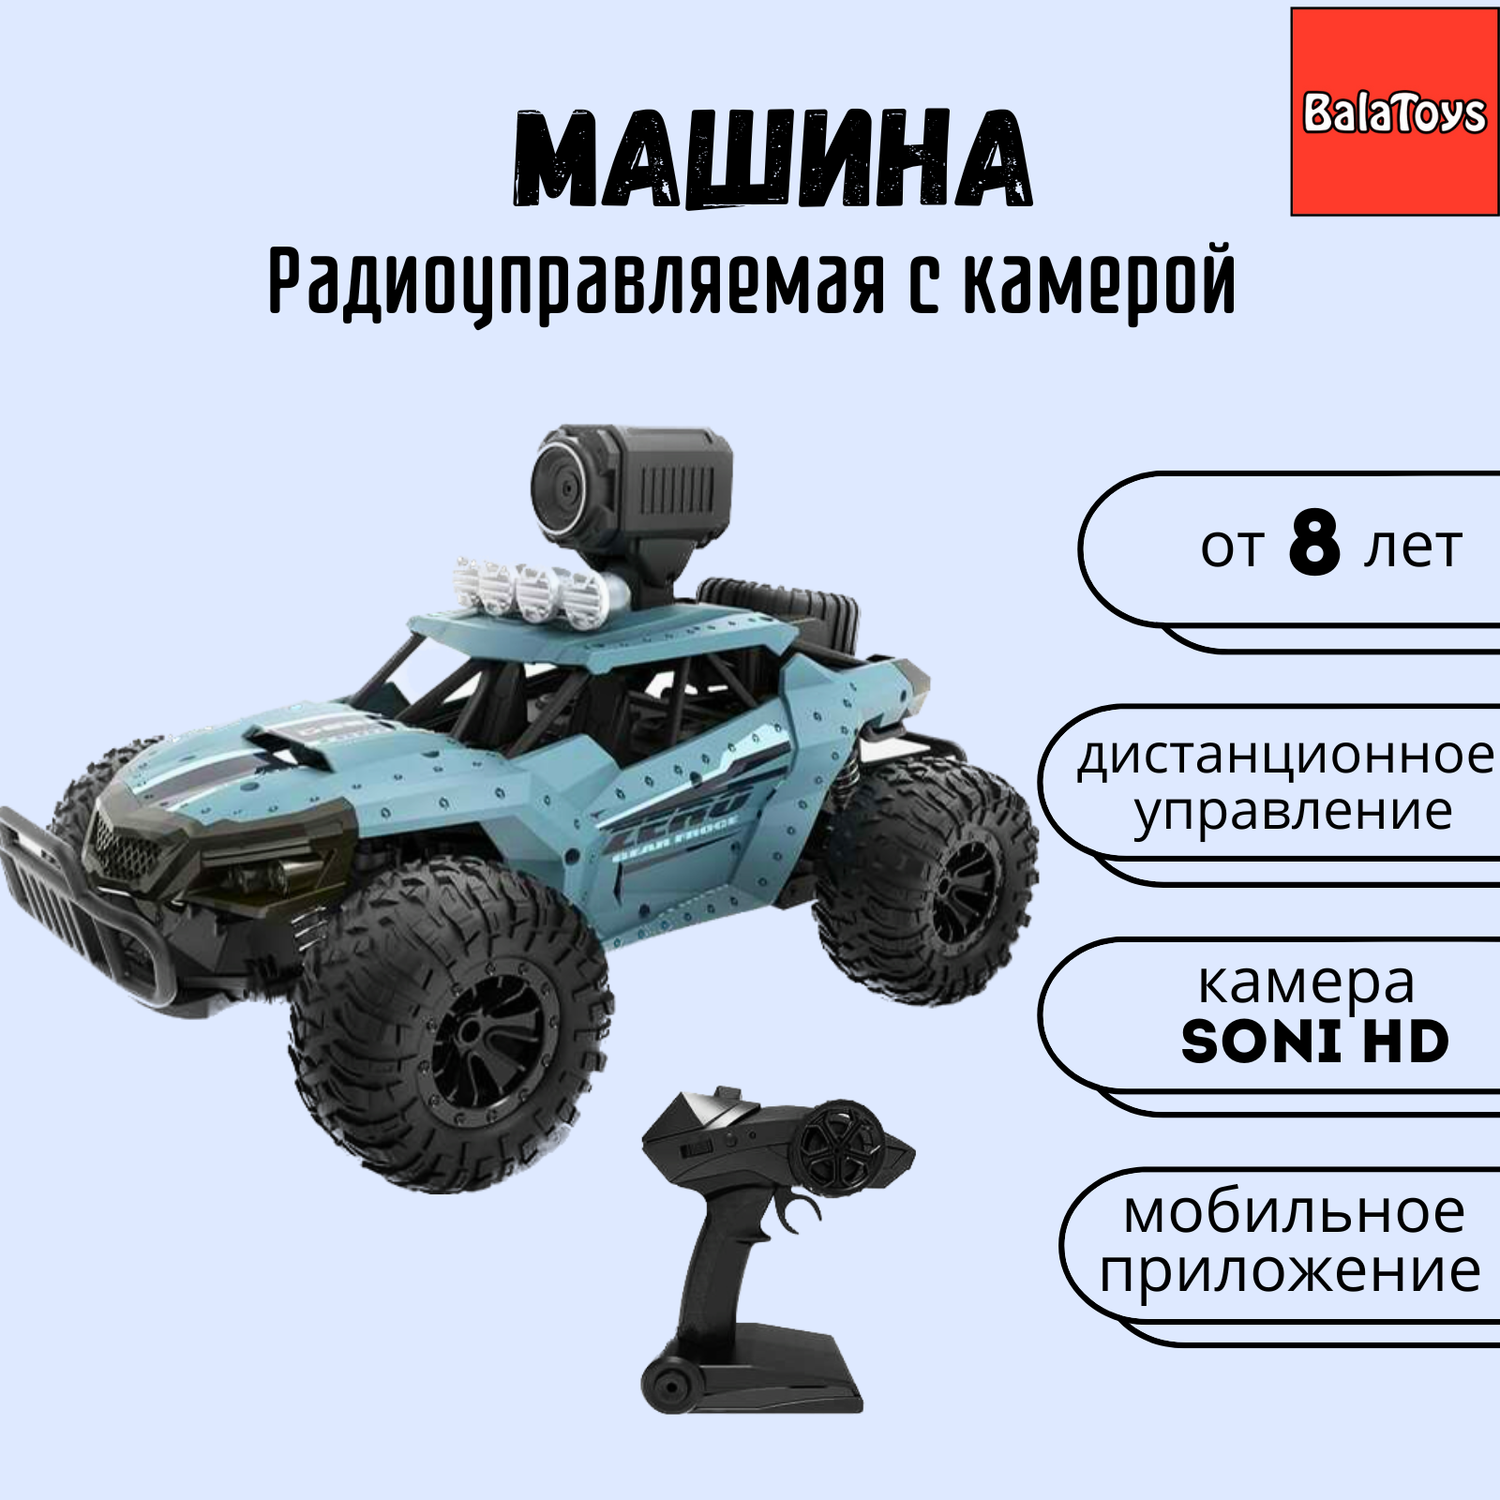 Машина на пульте управления BalaToys Heliway с камерой WiFi - фото 1